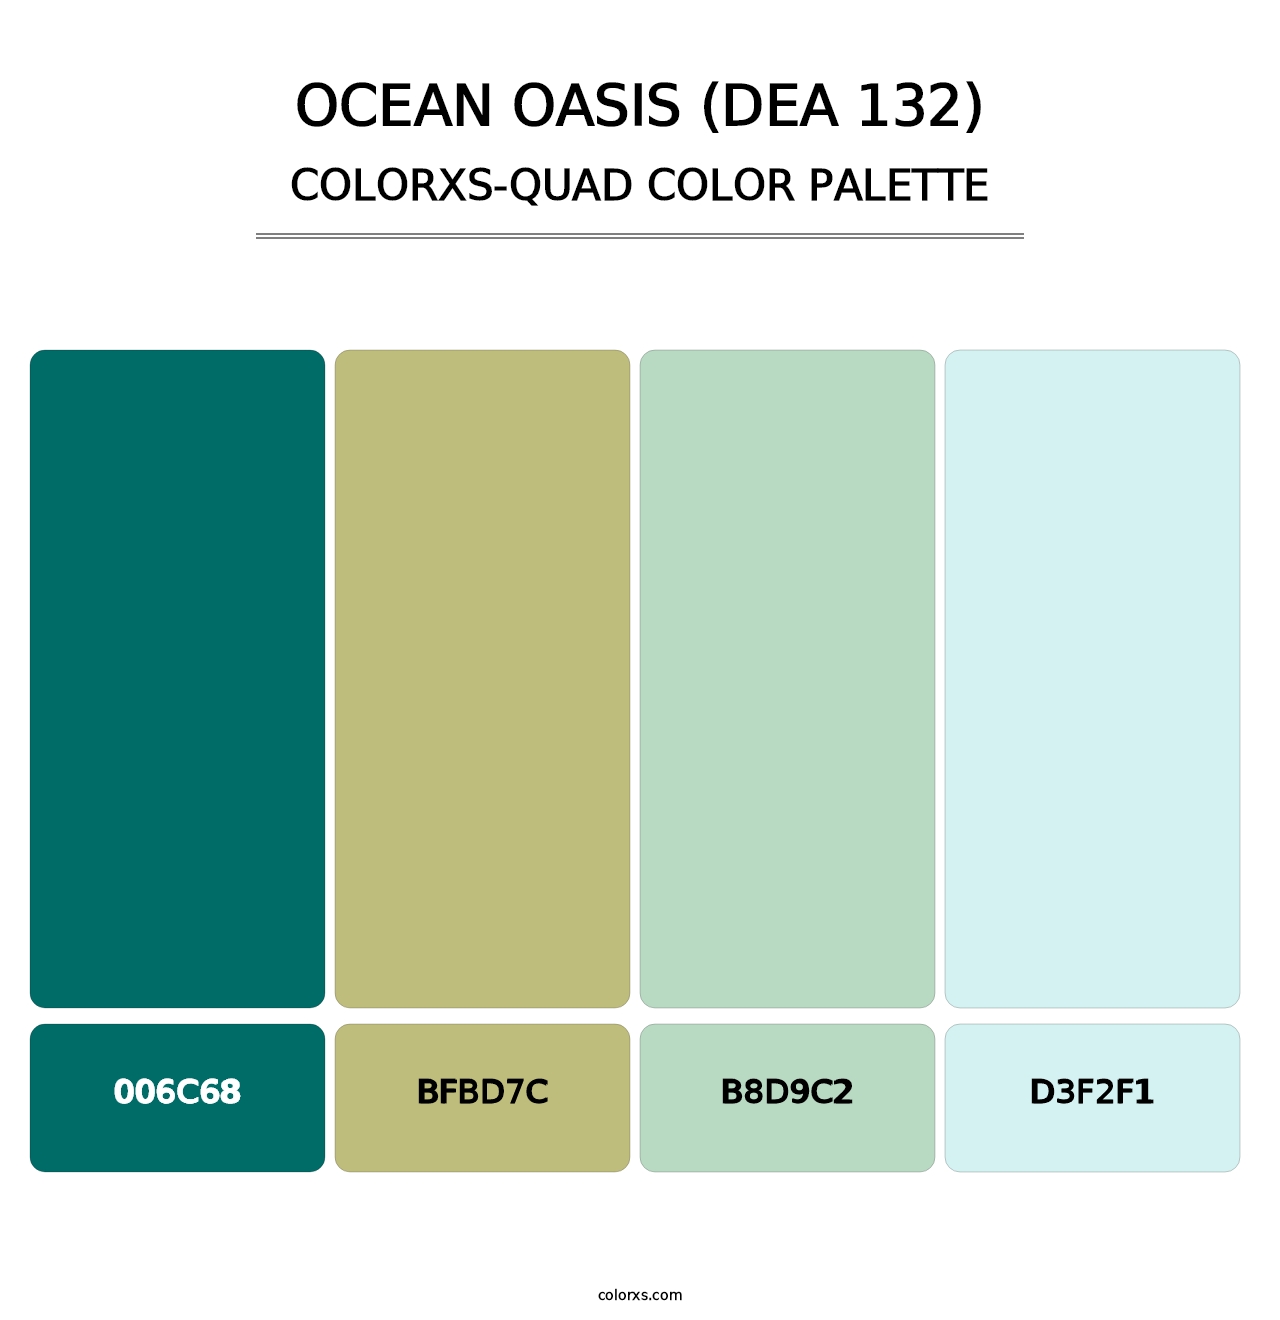 Ocean Oasis (DEA 132) - Colorxs Quad Palette